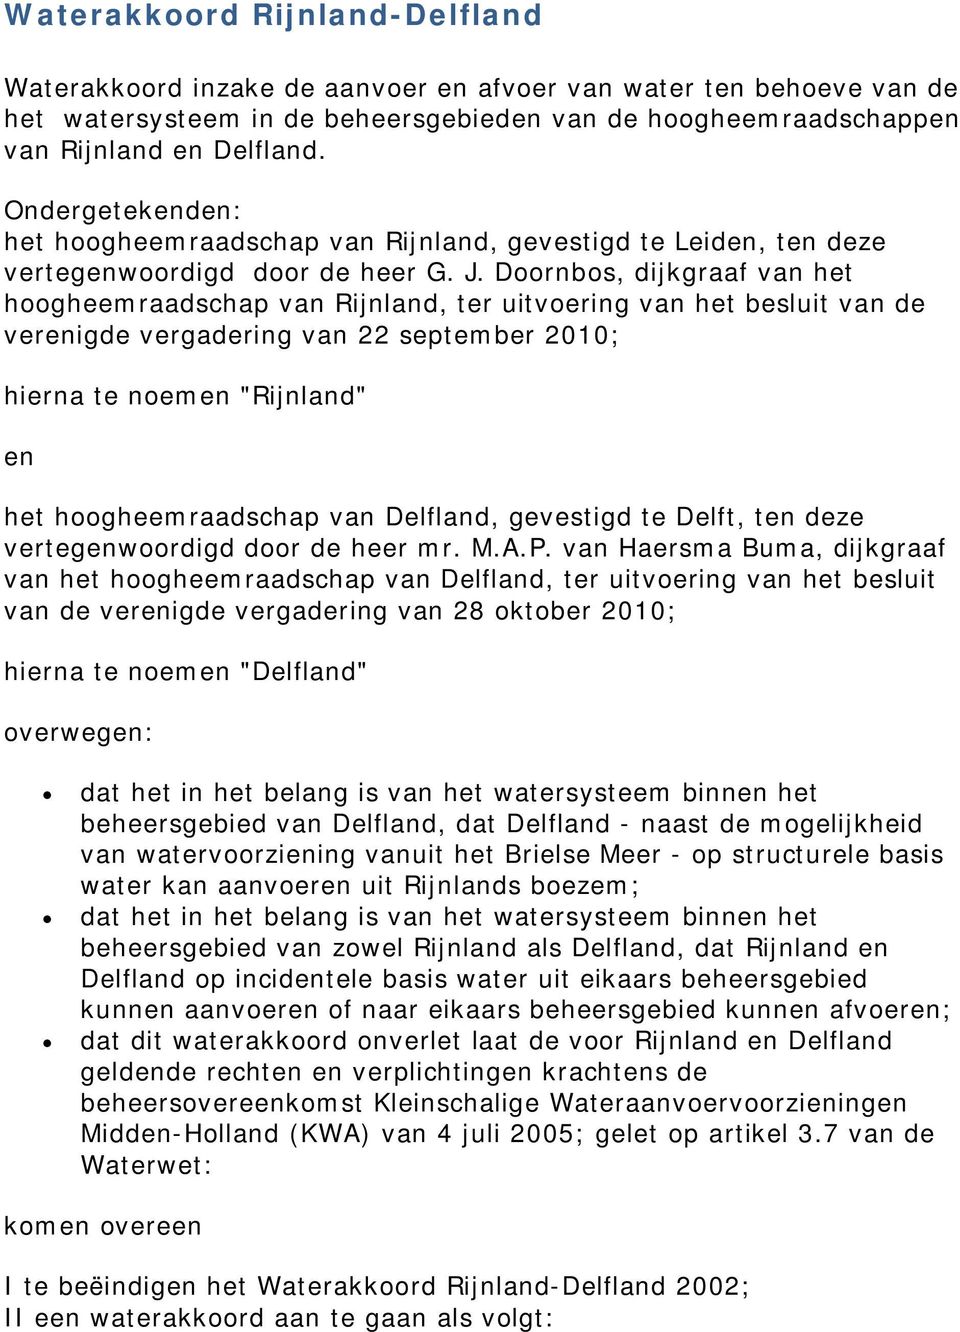 Doornbos, dijkgraaf van het hoogheemraadschap van Rijnland, ter uitvoering van het besluit van de verenigde vergadering van 22 september 2010; hierna te noemen "Rijnland" en het hoogheemraadschap van